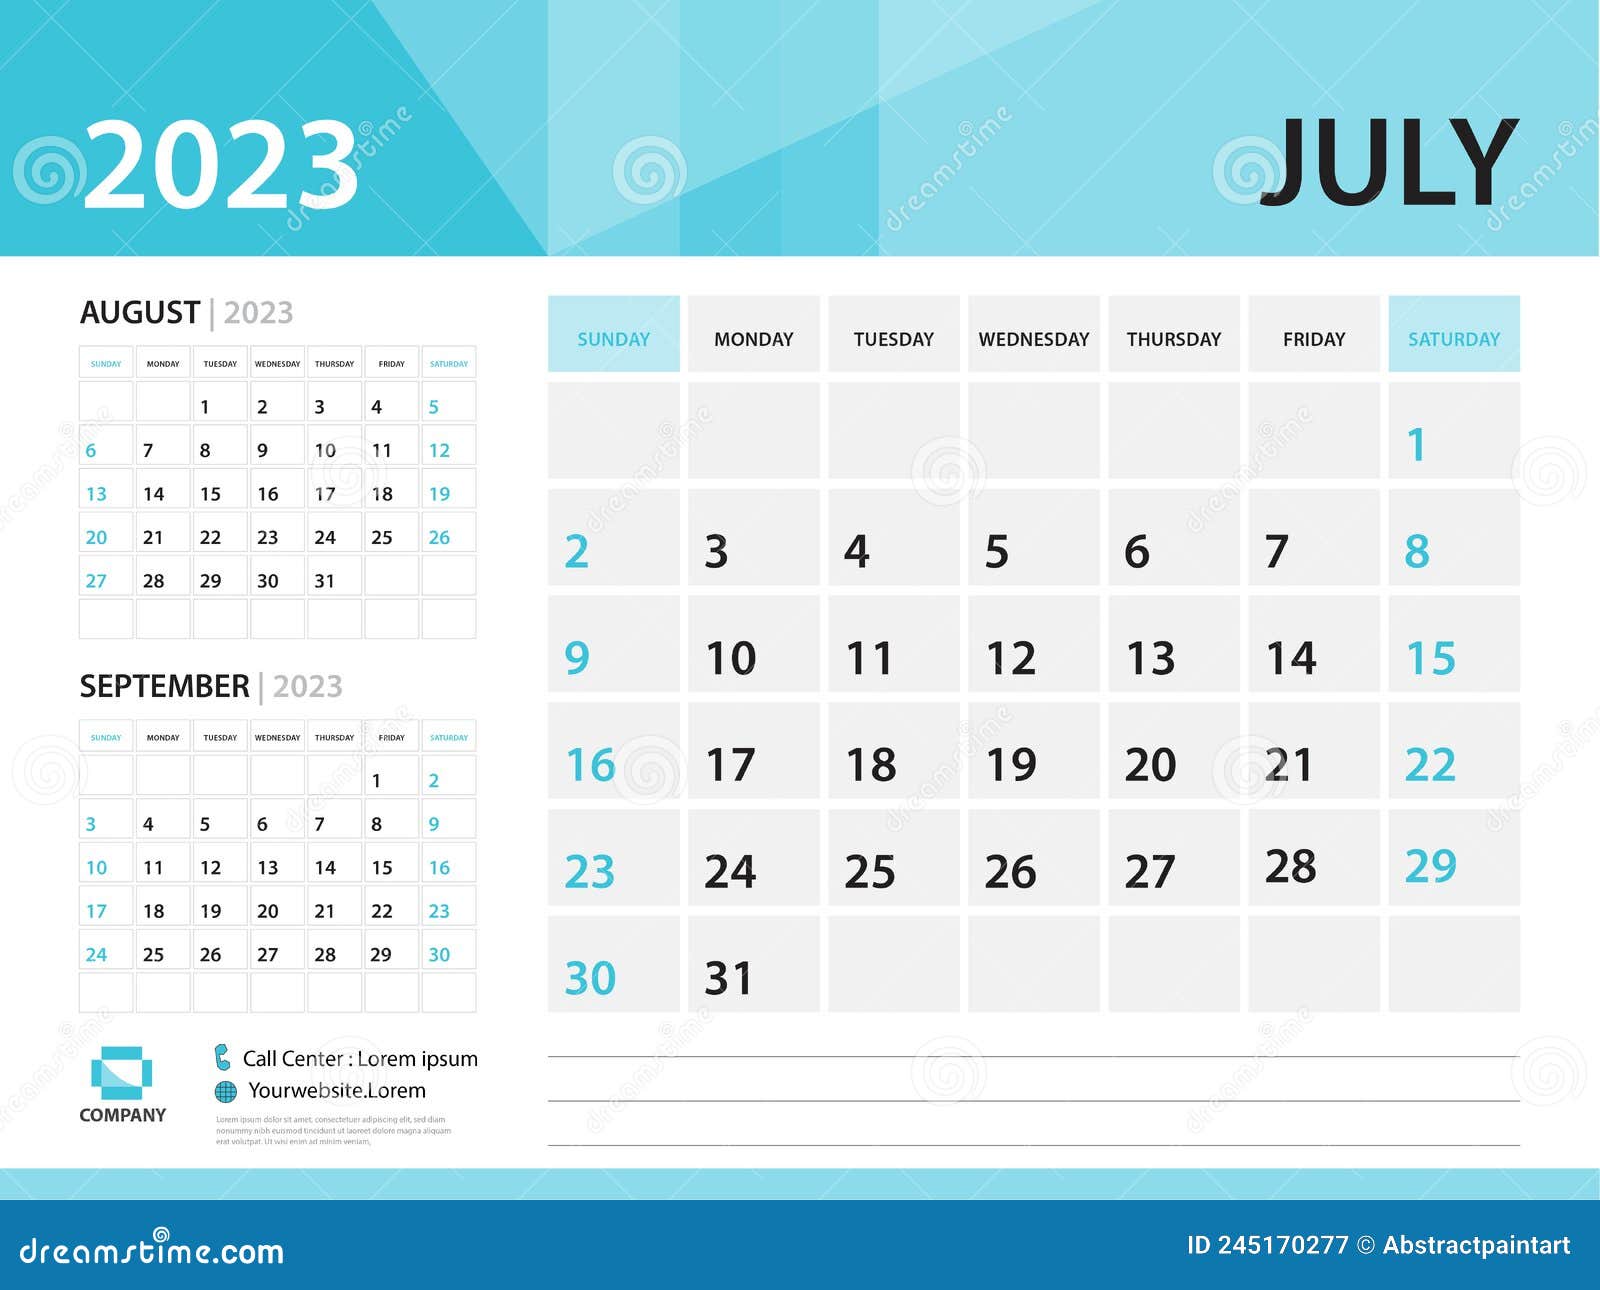 Calendar 2023 Template, July 2023 Year, Desk Calendar 2023 Template